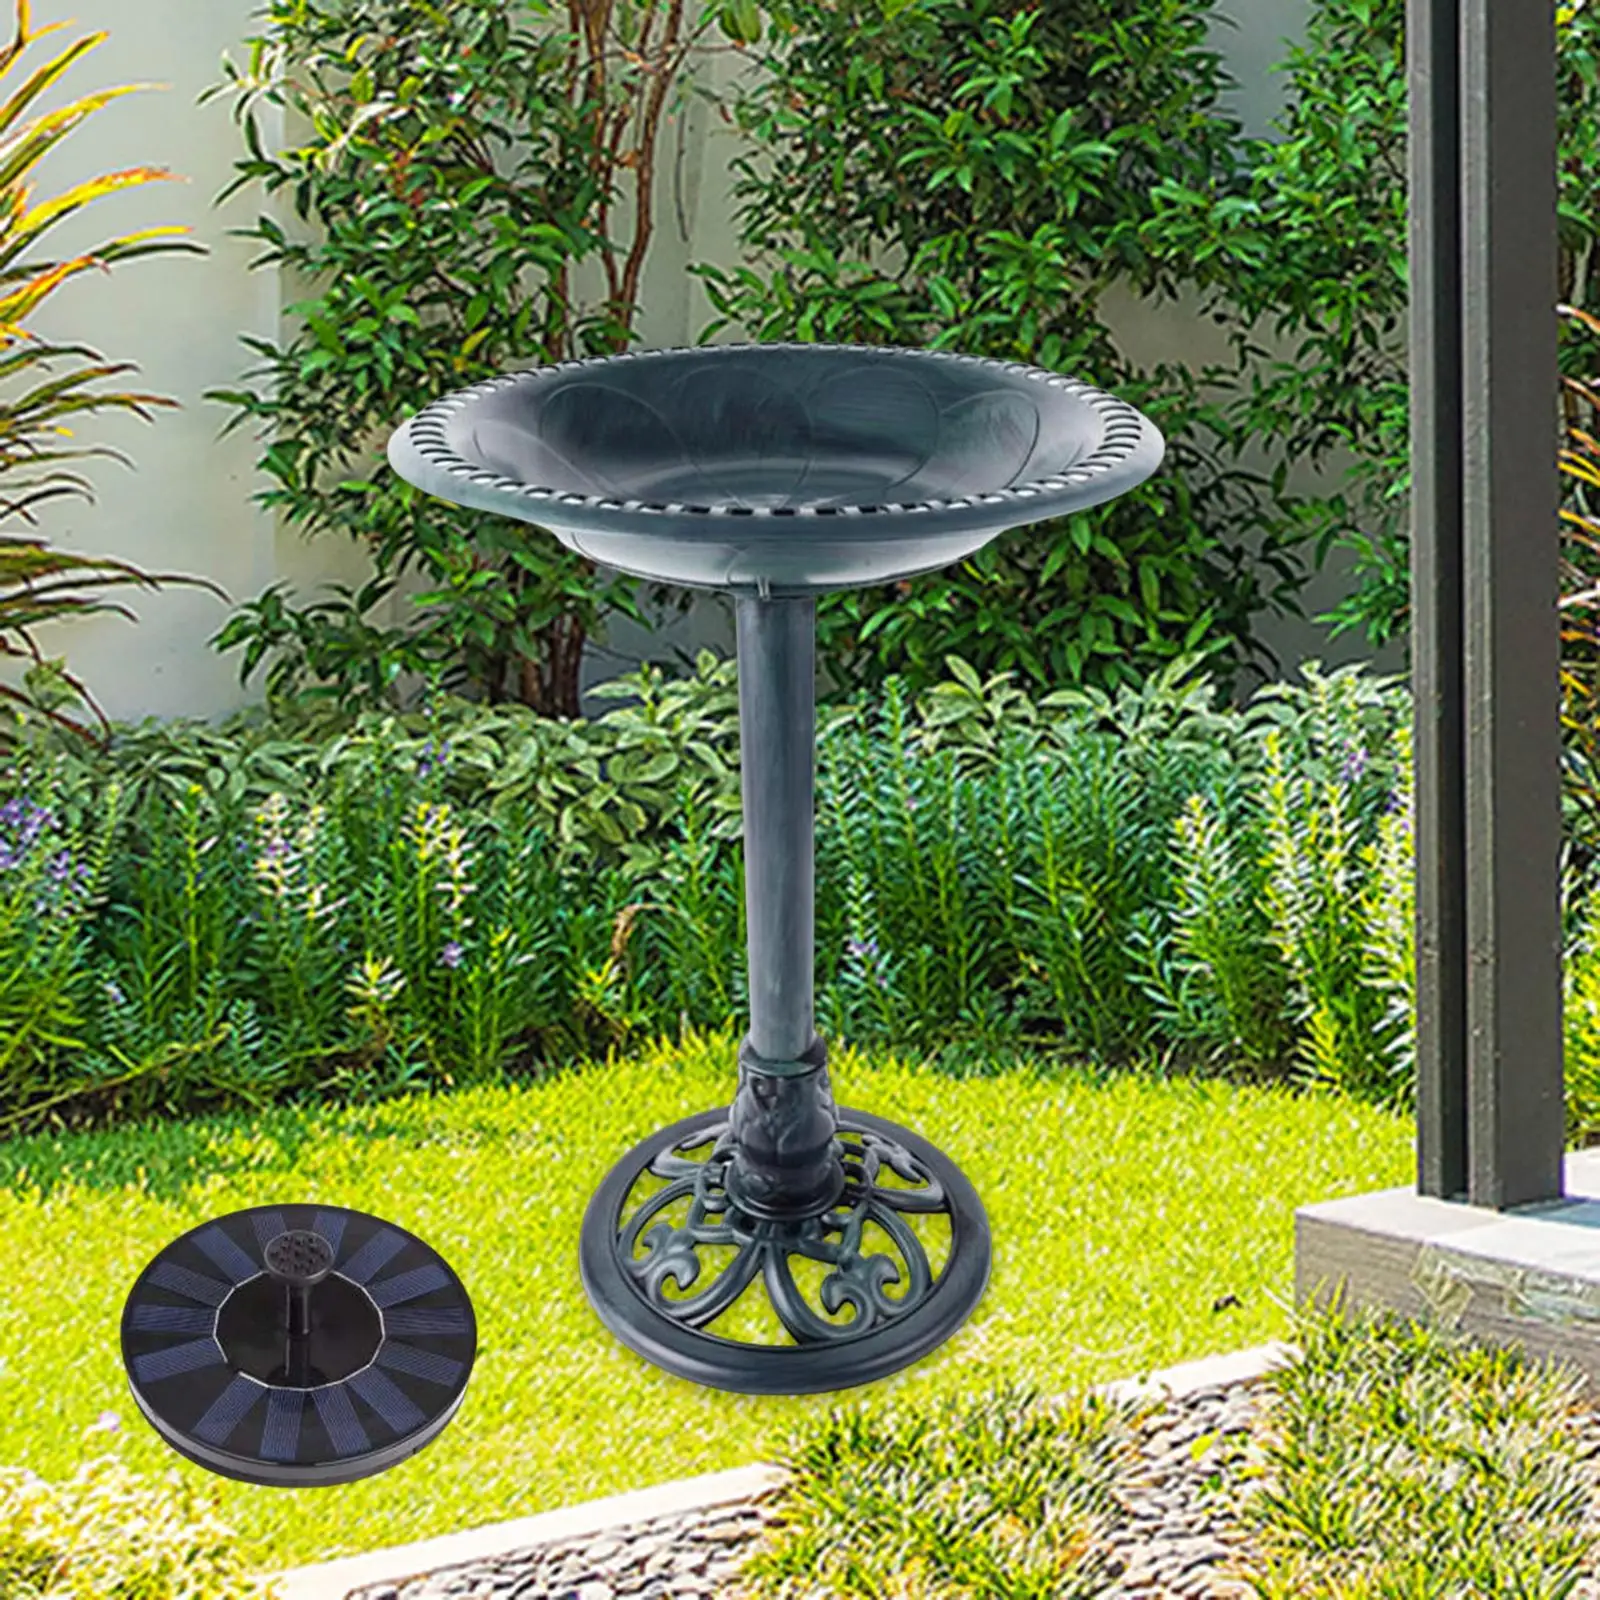 Garden Bird Bath Ornament Porch Outdoor Patio Bird Bath Bowl Solar Fountain for Park Backyard